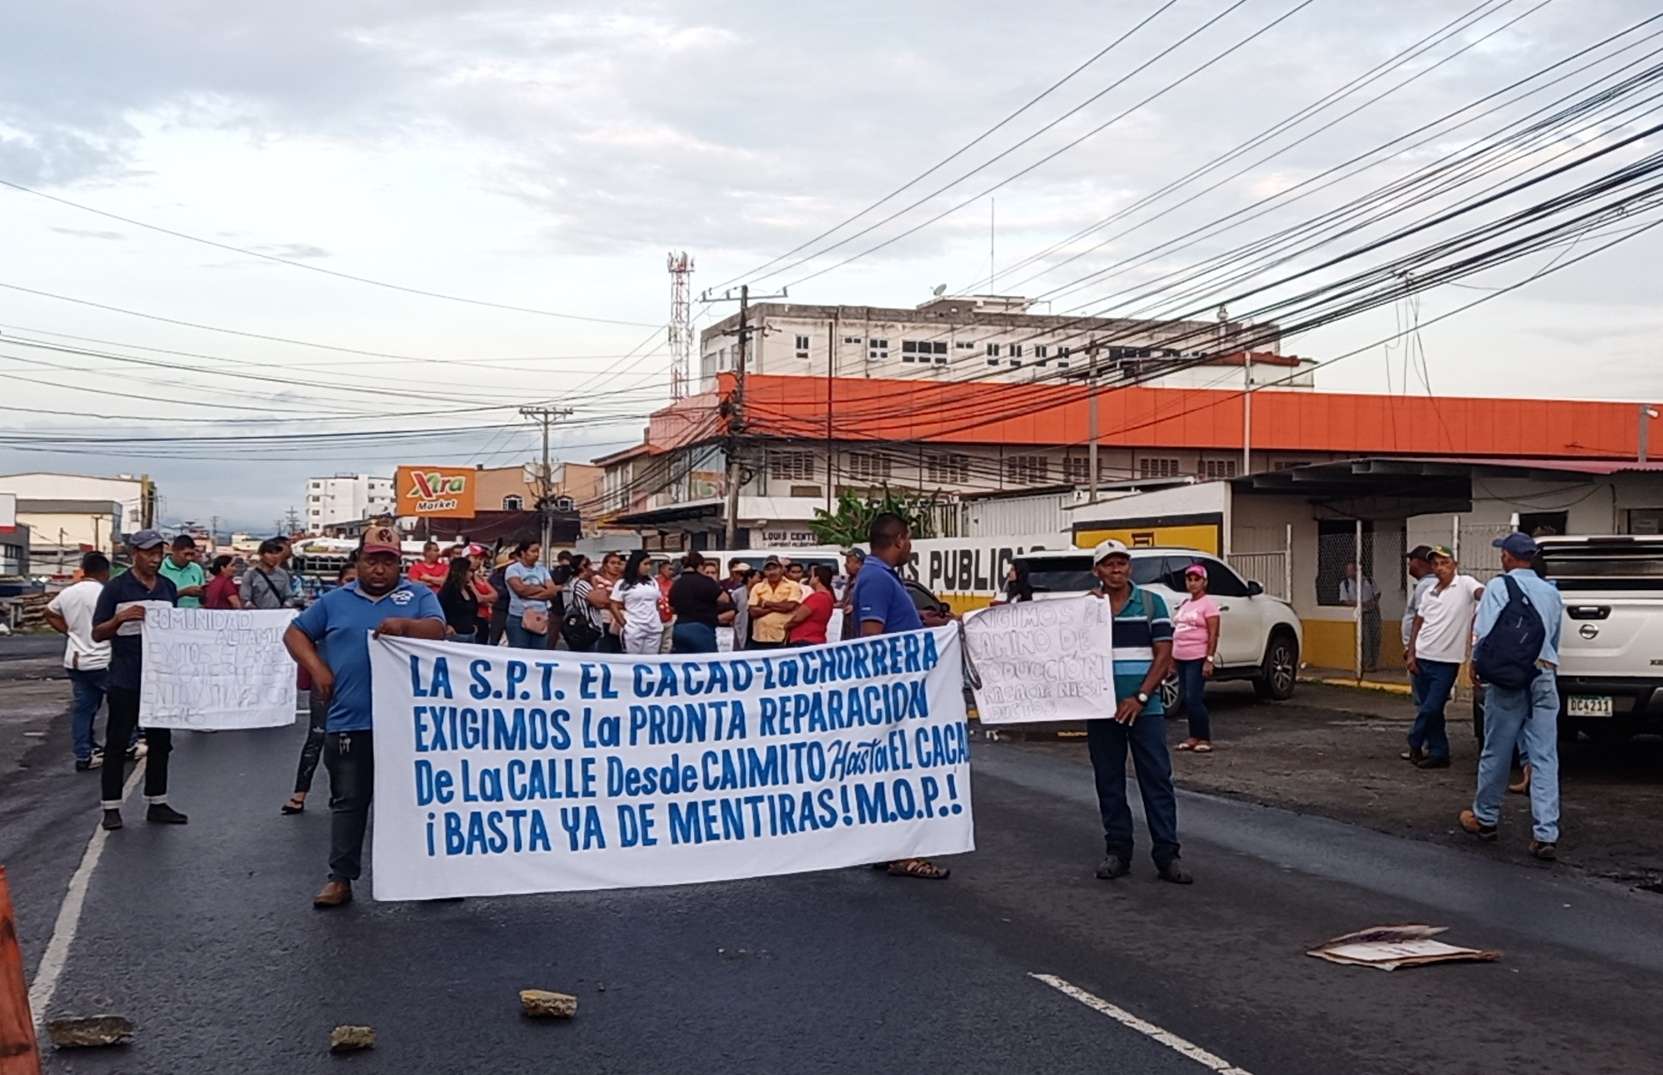 Los capireños llegaron a protestar hasta la sede del MOP, ubicada en La Chorrera.